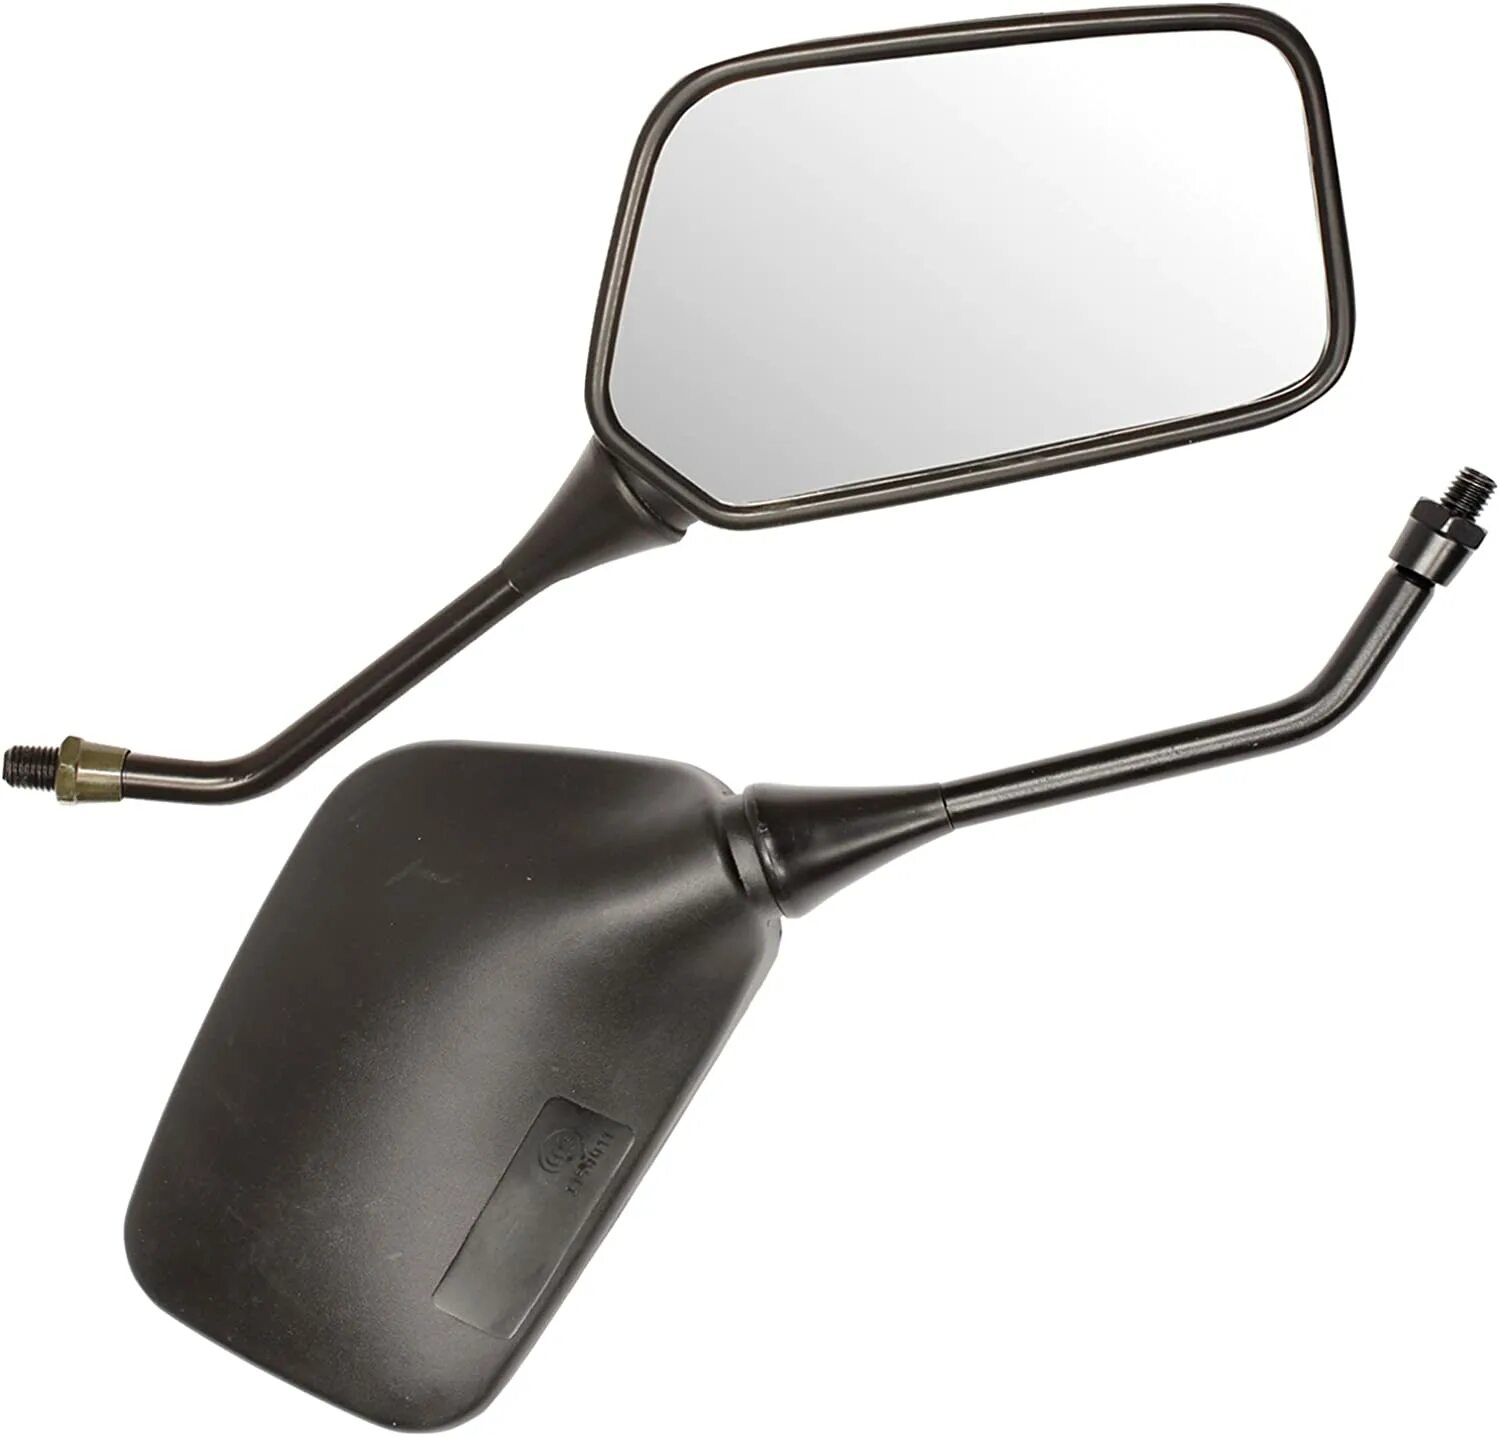 Зеркала Yamaha YBR 125. Handlebar Bike Mirror зеркало. Зеркало на мопед qy140r. Зеркала на мопед Альфа. Купить зеркала универсальные